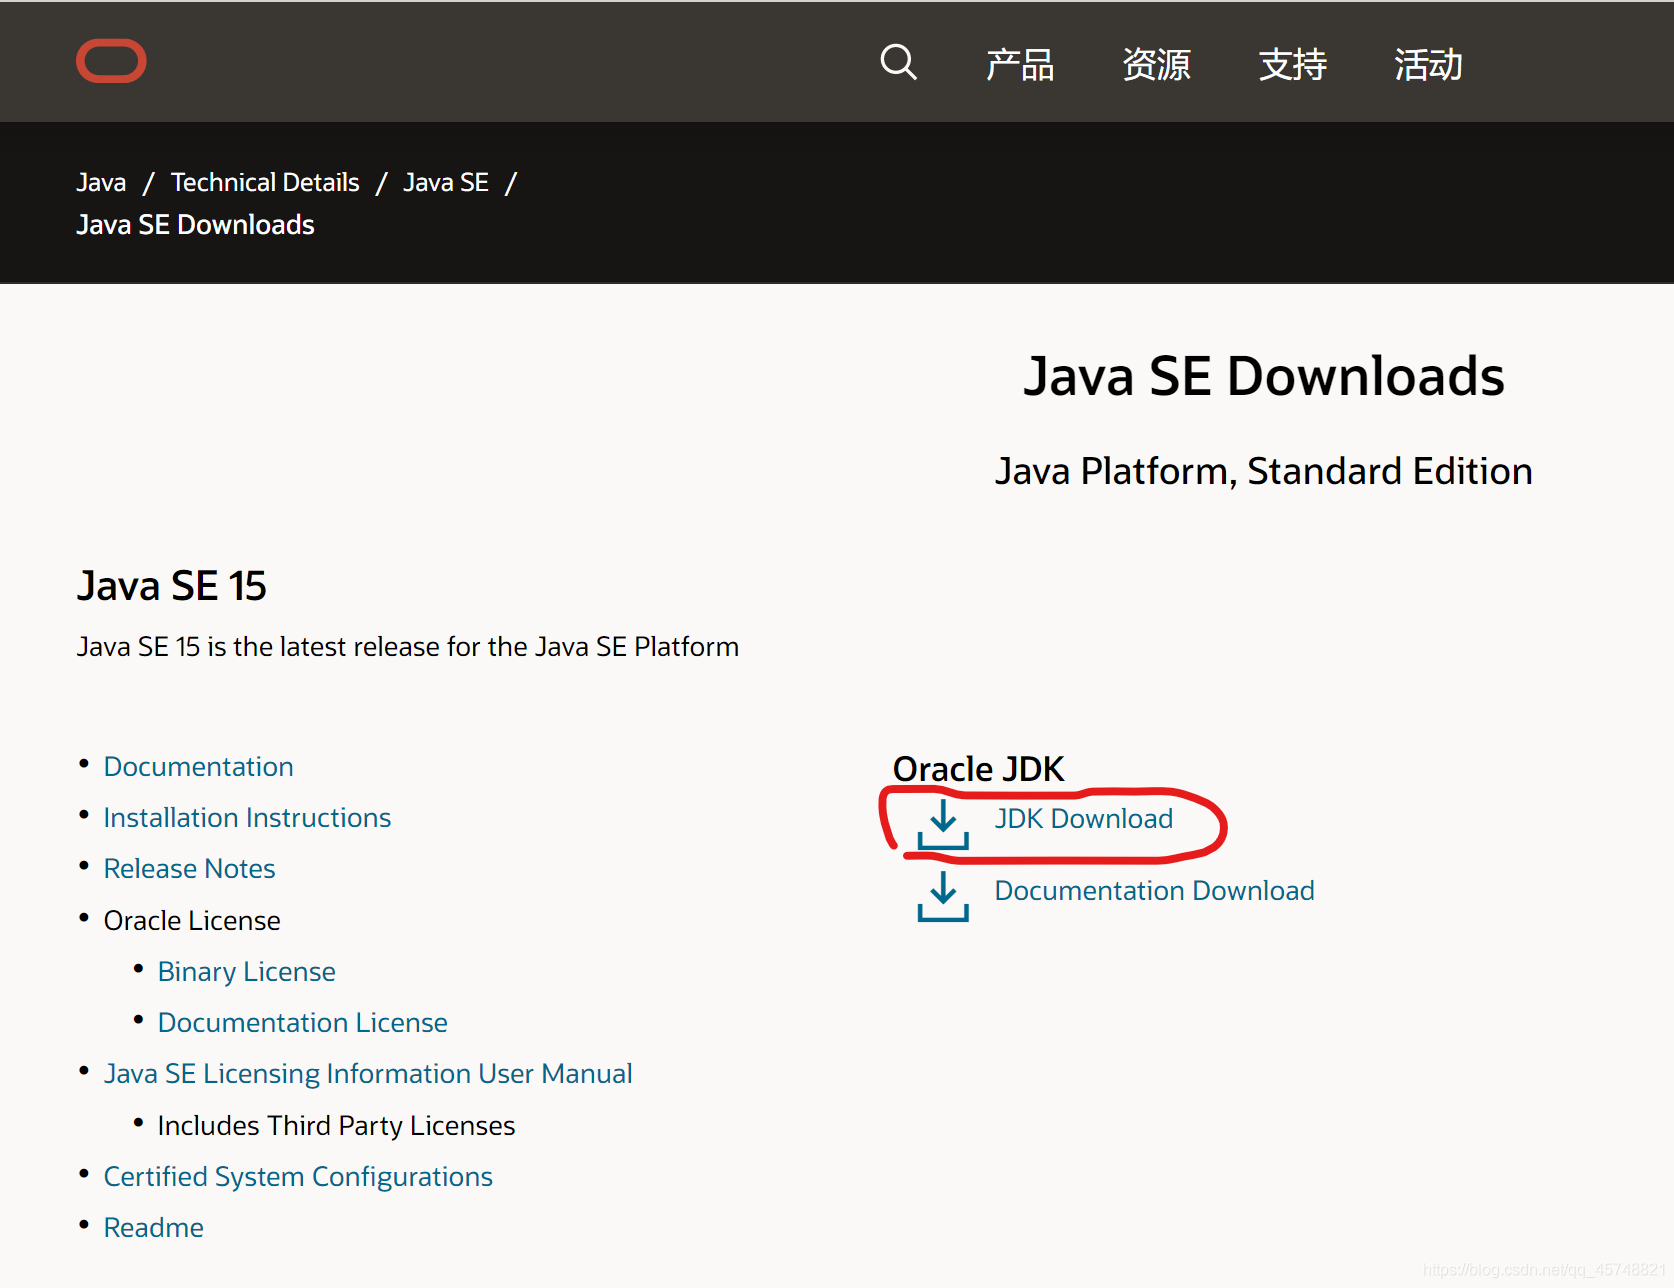 JDK Download（这里是Java SE 15为例，可下最新版）